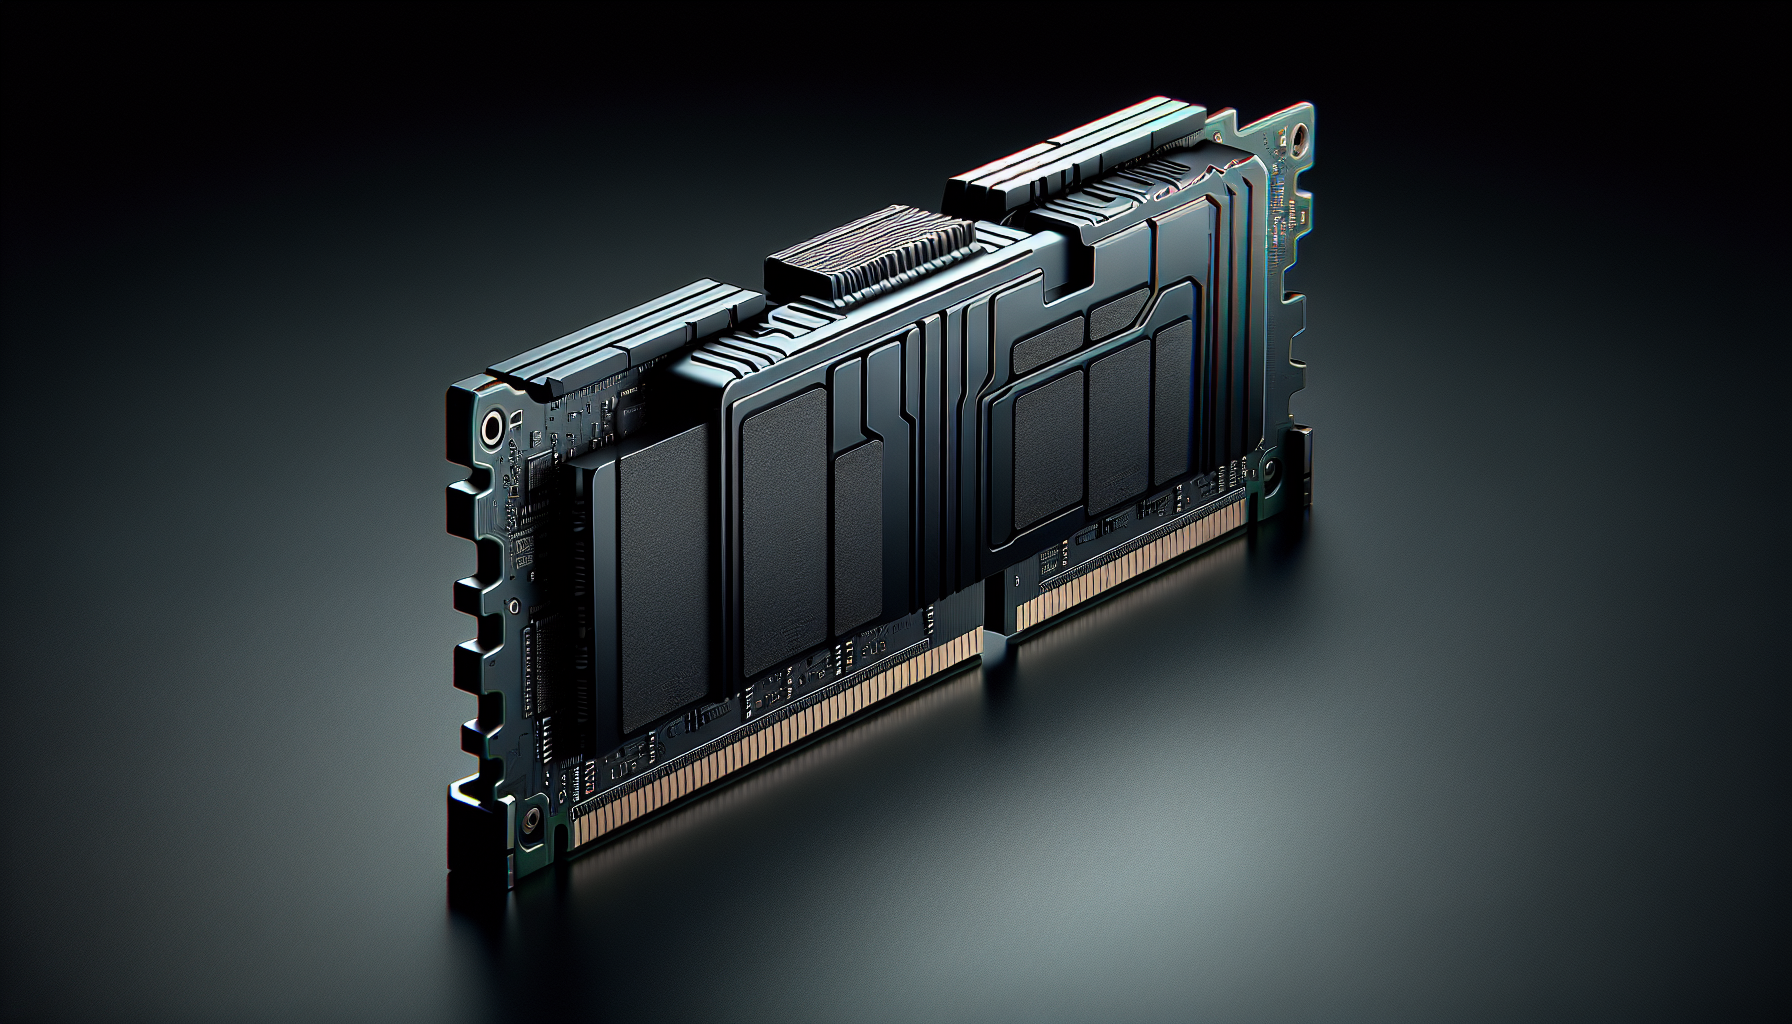 G.SKILL Ripjaws V Series (Intel XMP) DDR4 RAM 16GB (2x8GB) 3600MT/s CL18-22-22-42 1.35V Desktop Computer Memory UDIMM - Black (F4-3600C18D-16GVK)